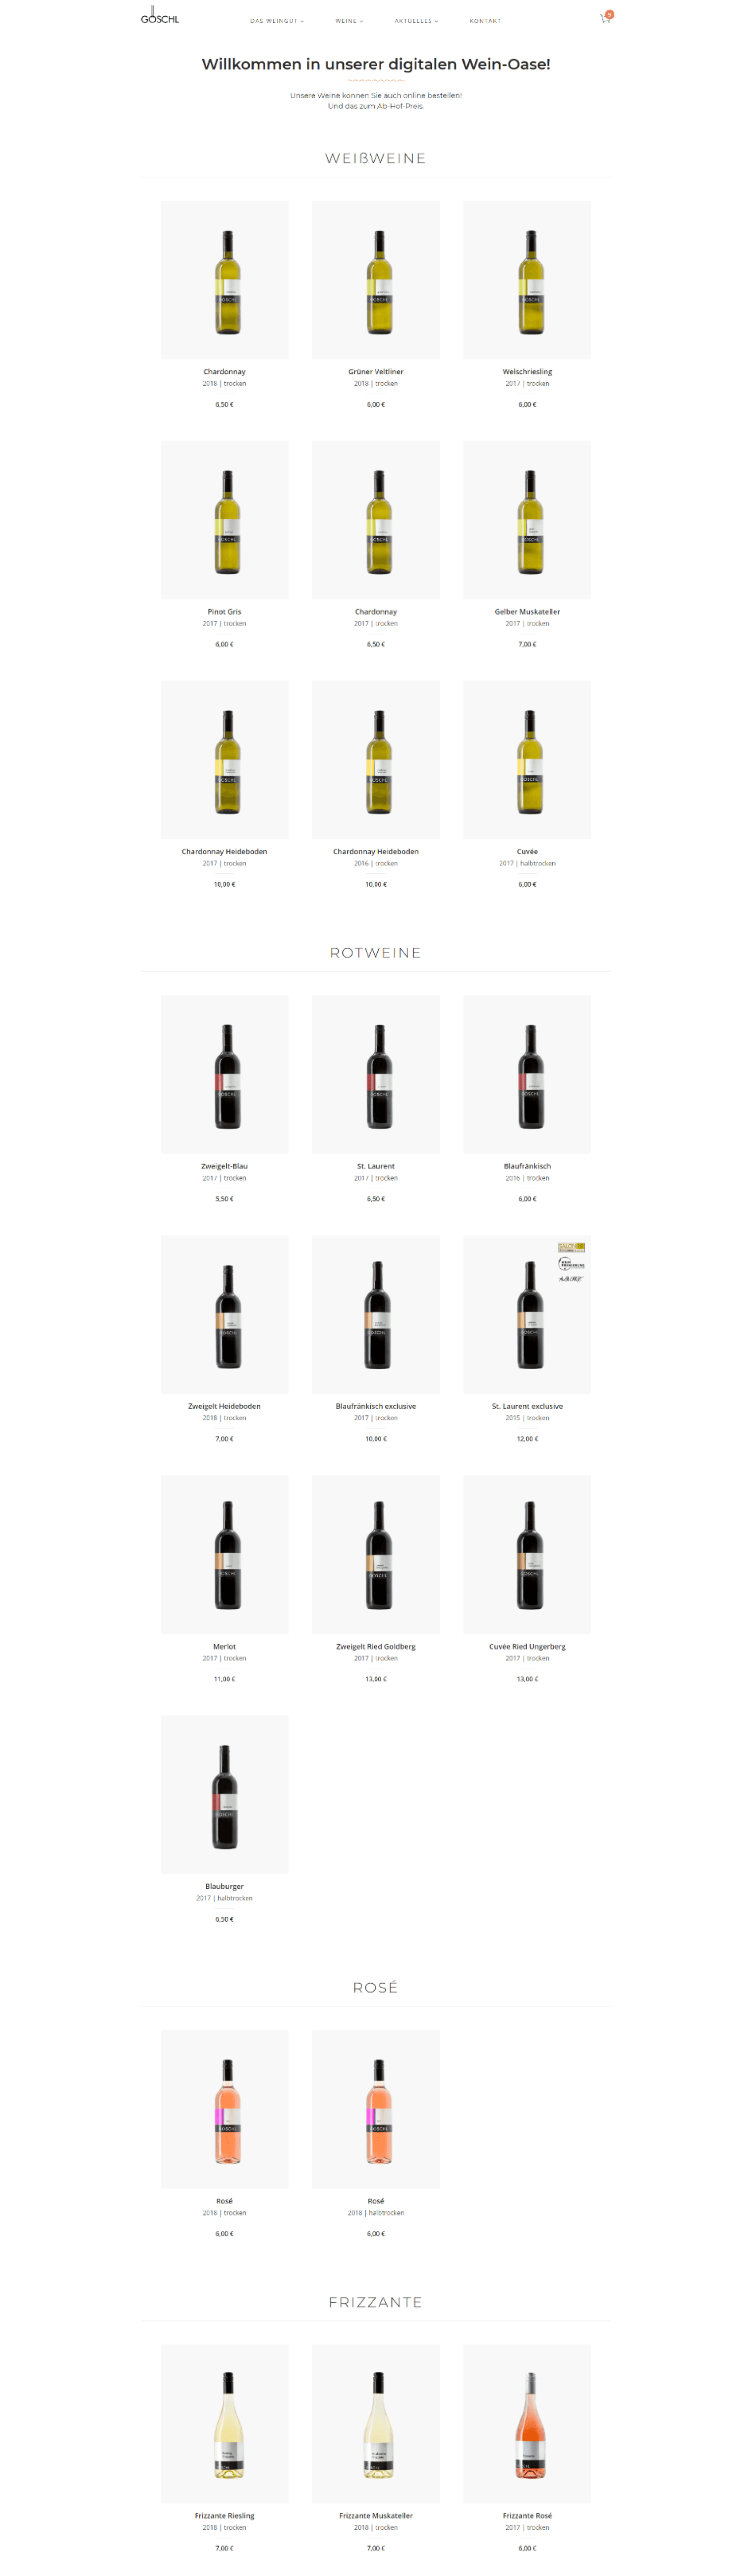 Weingut Göschl Website Preview